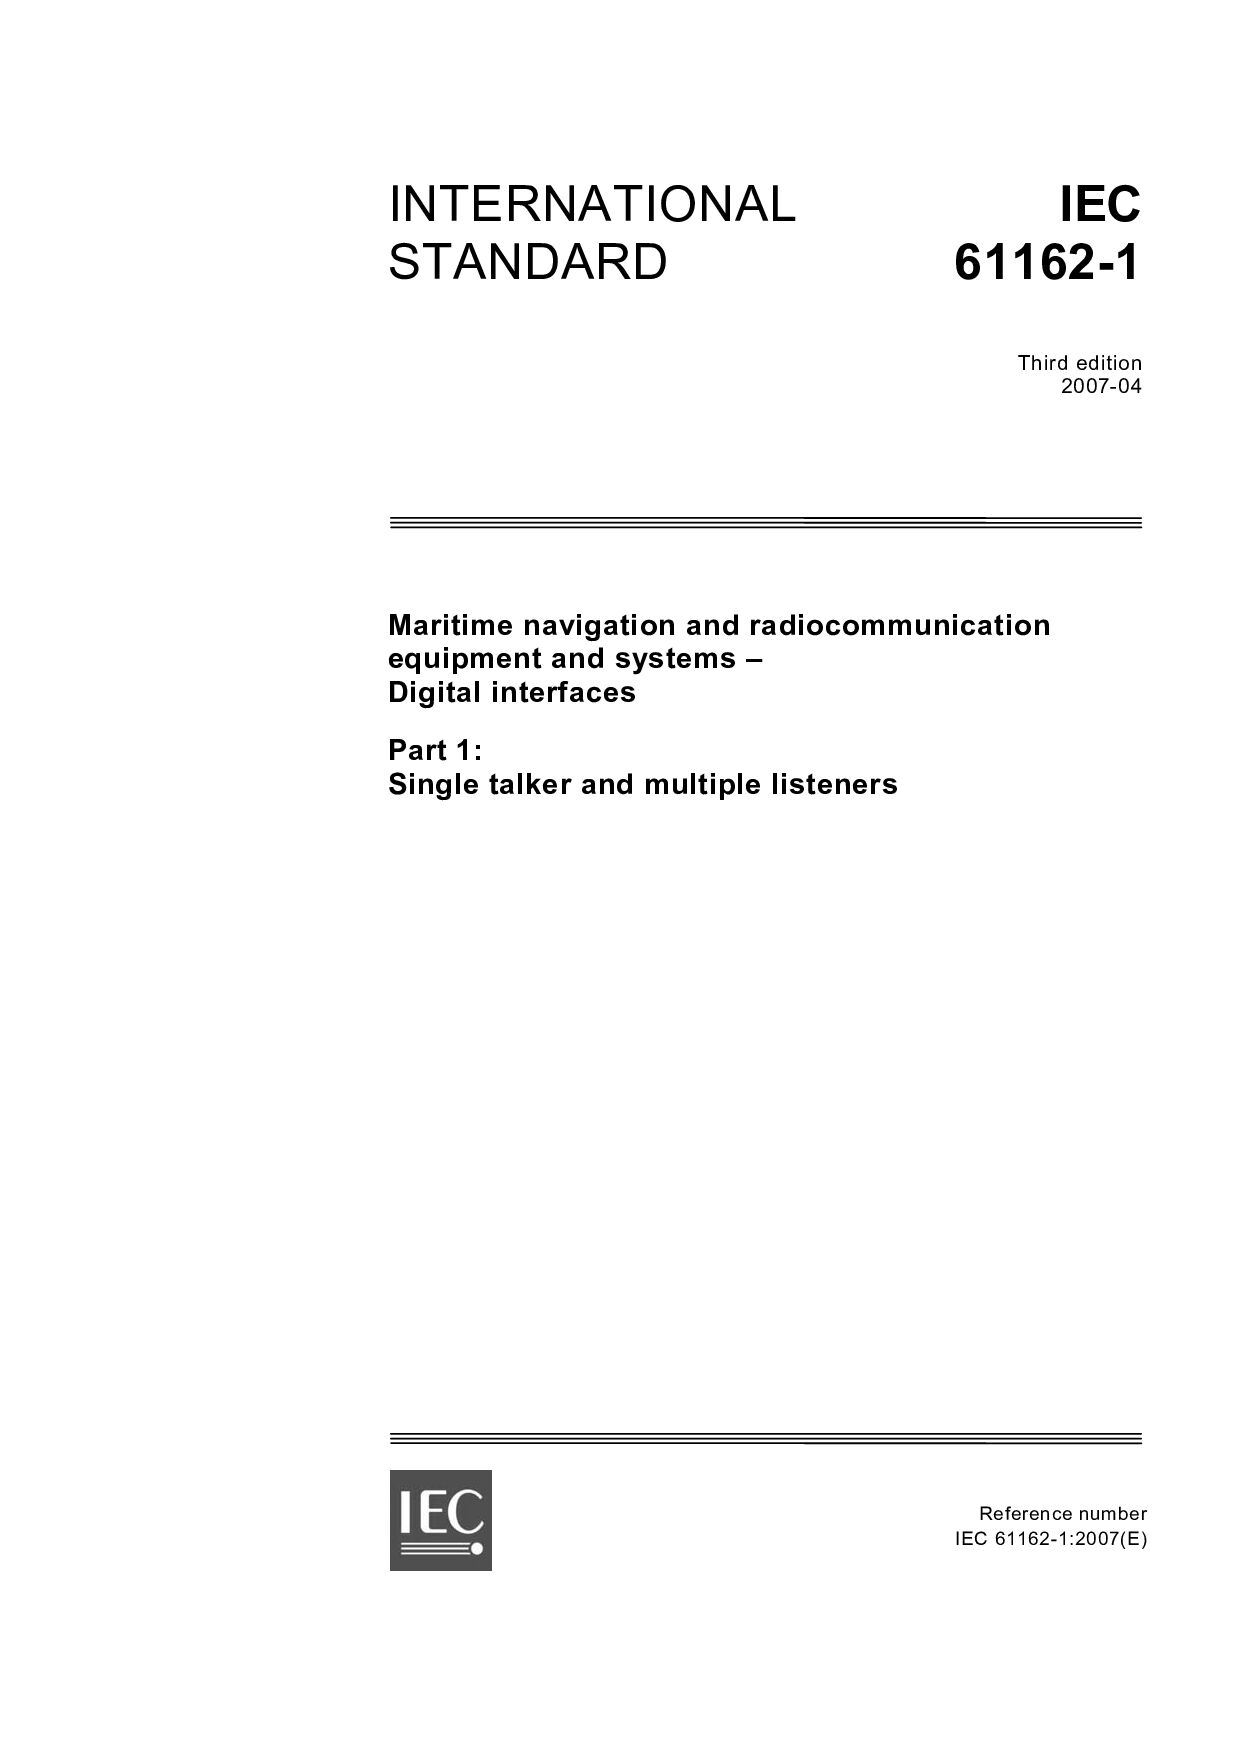 IEC 61162-1:2007封面图